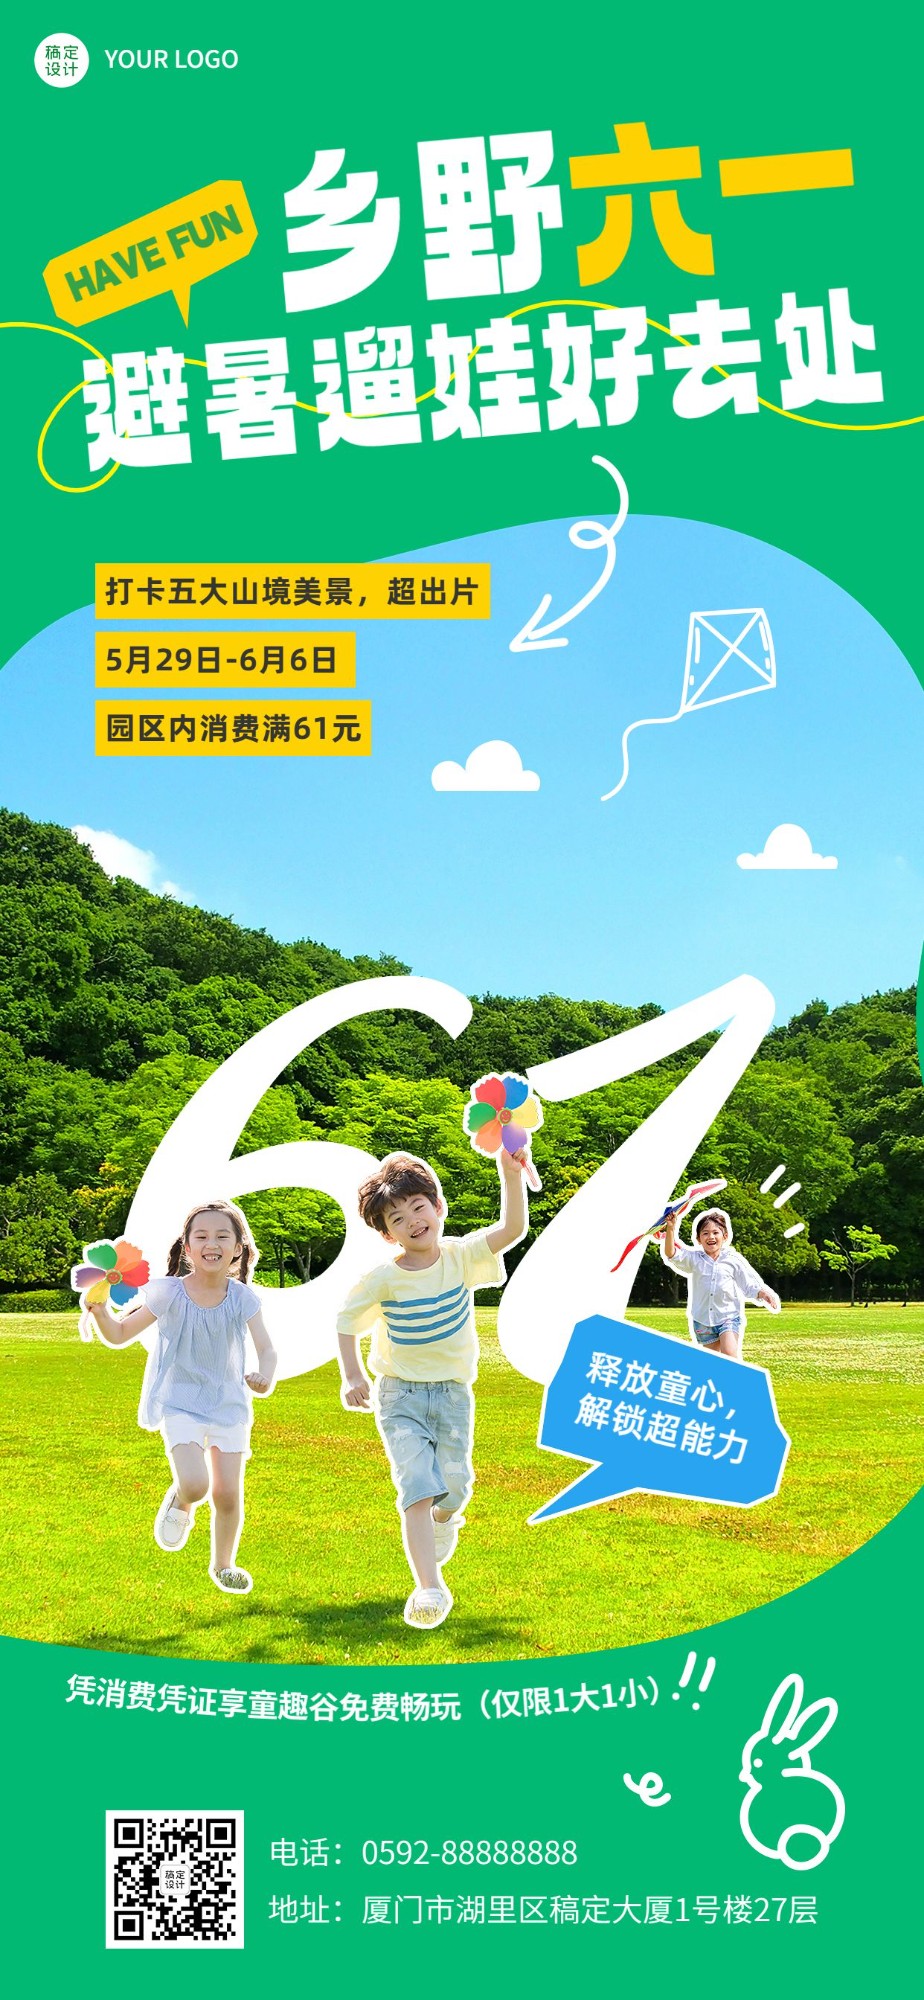 旅游61儿童节旅行社可爱感全屏竖版海报预览效果